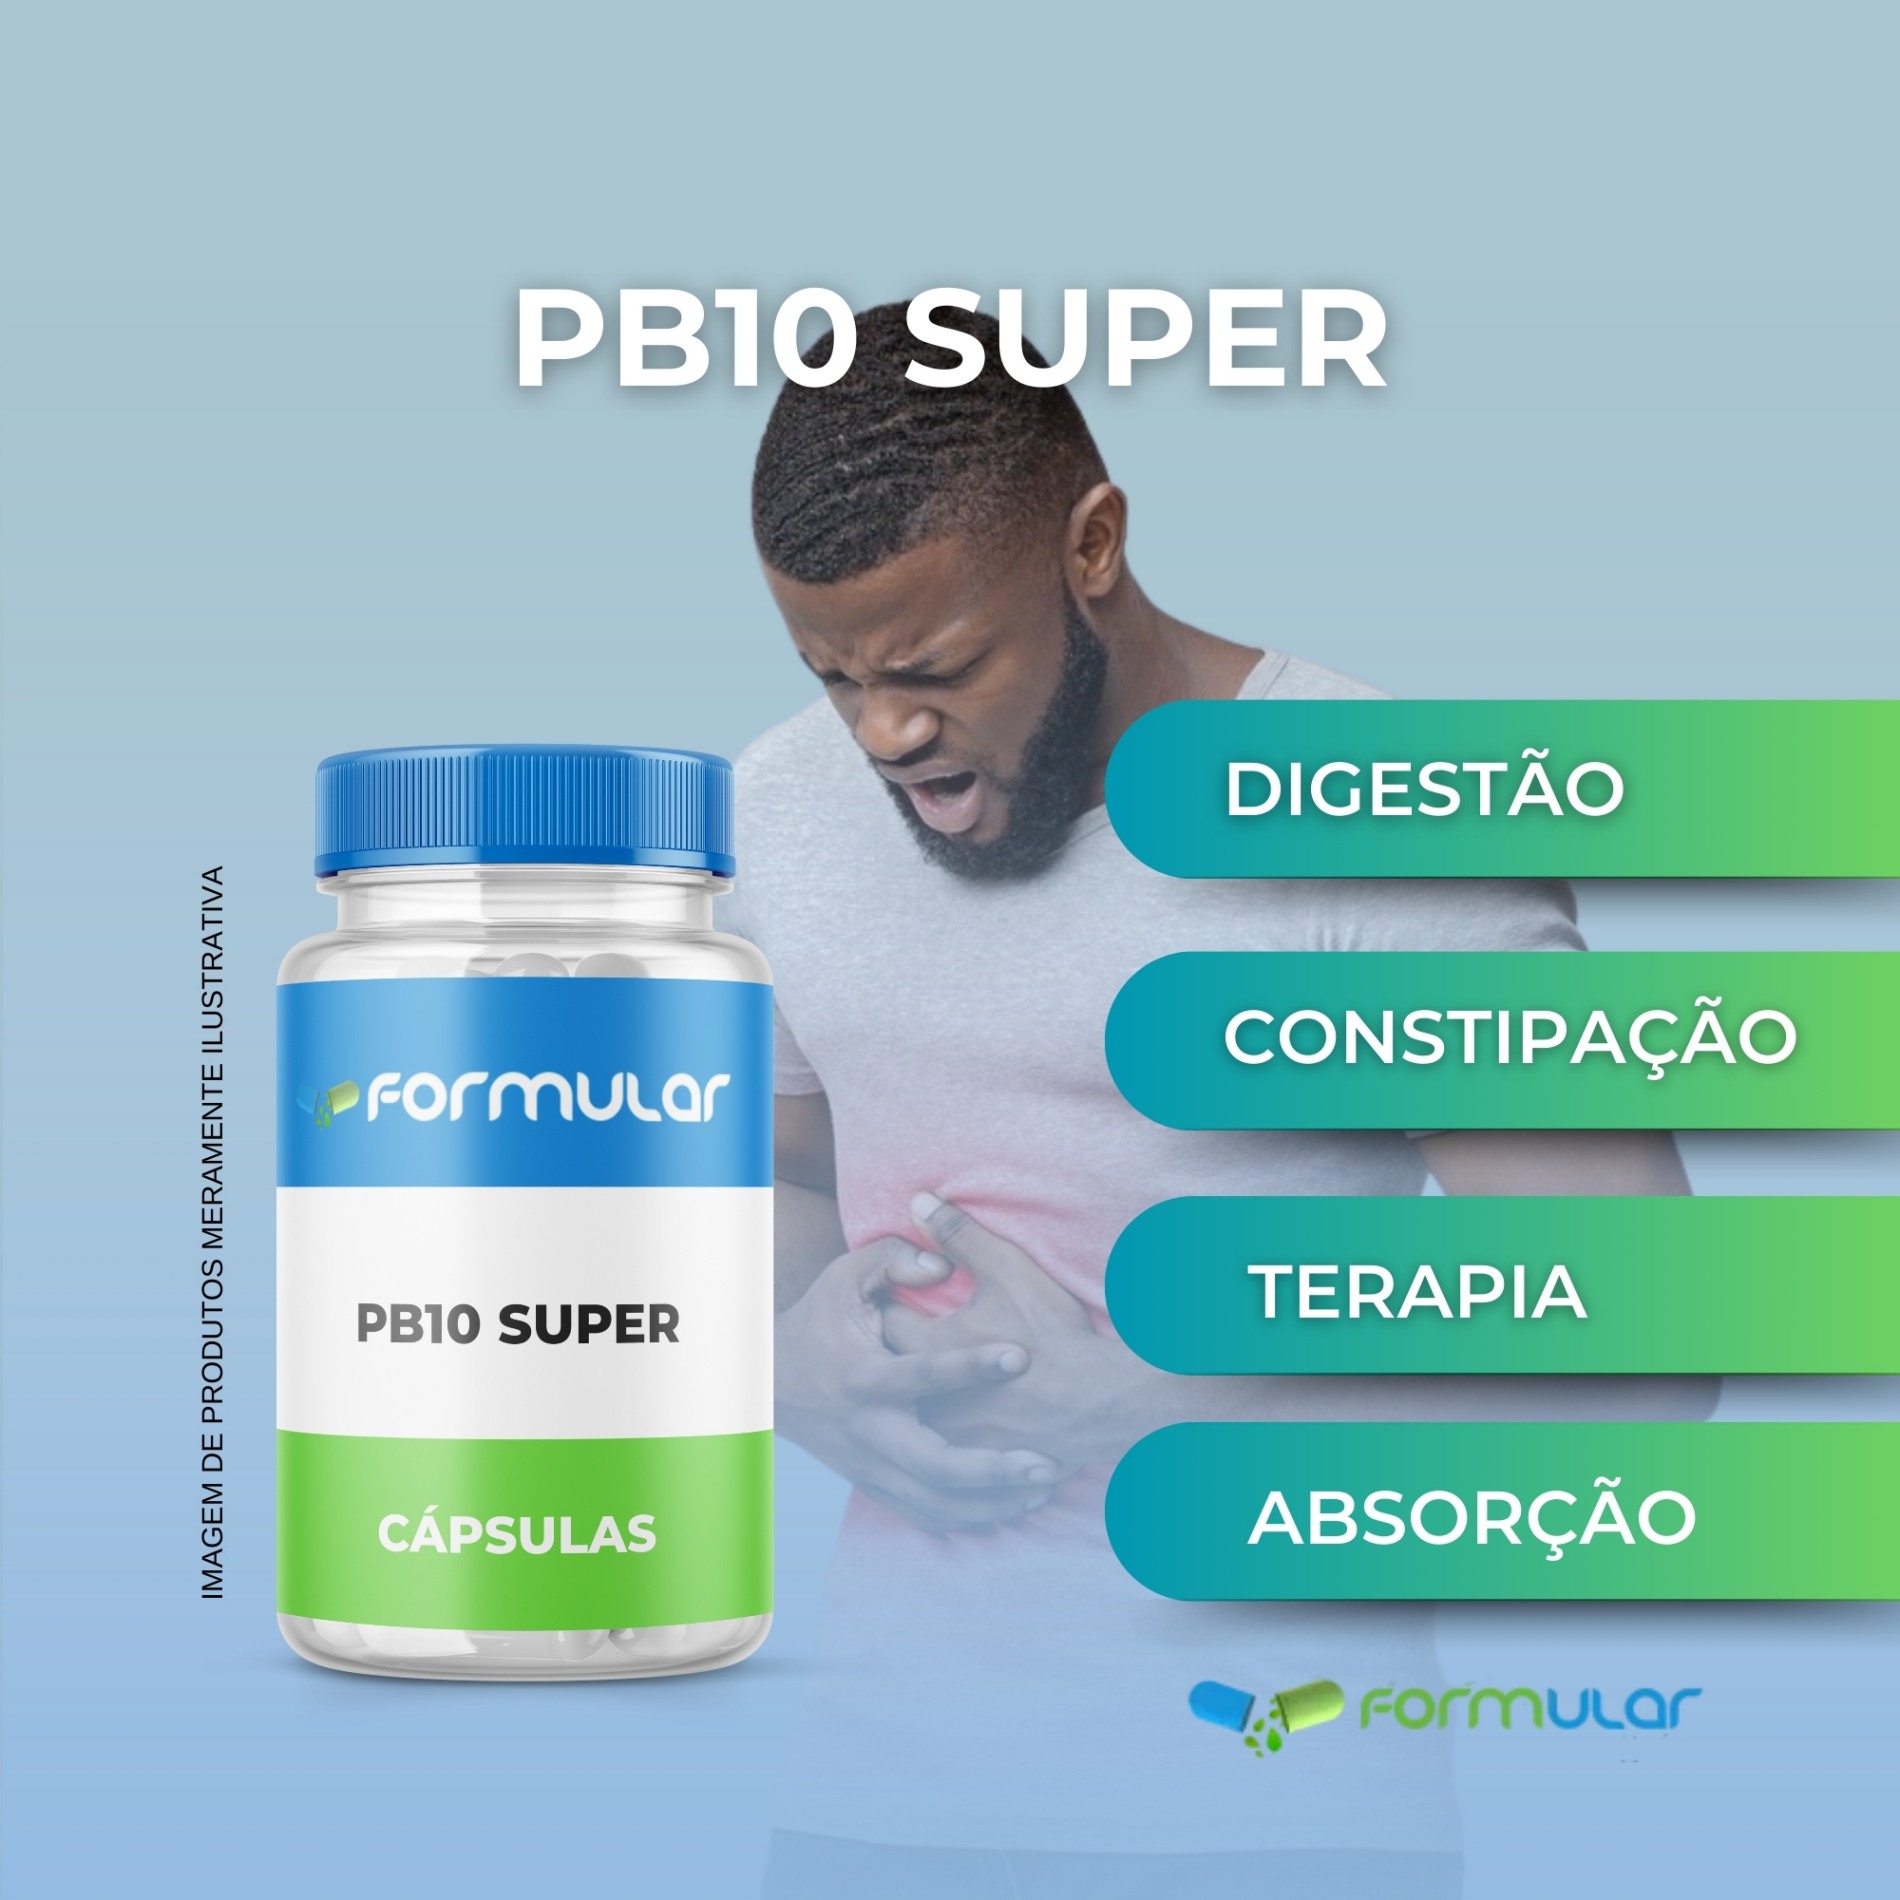 PB10 Super: Potência Máxima em Probióticos - 20 Bilhões